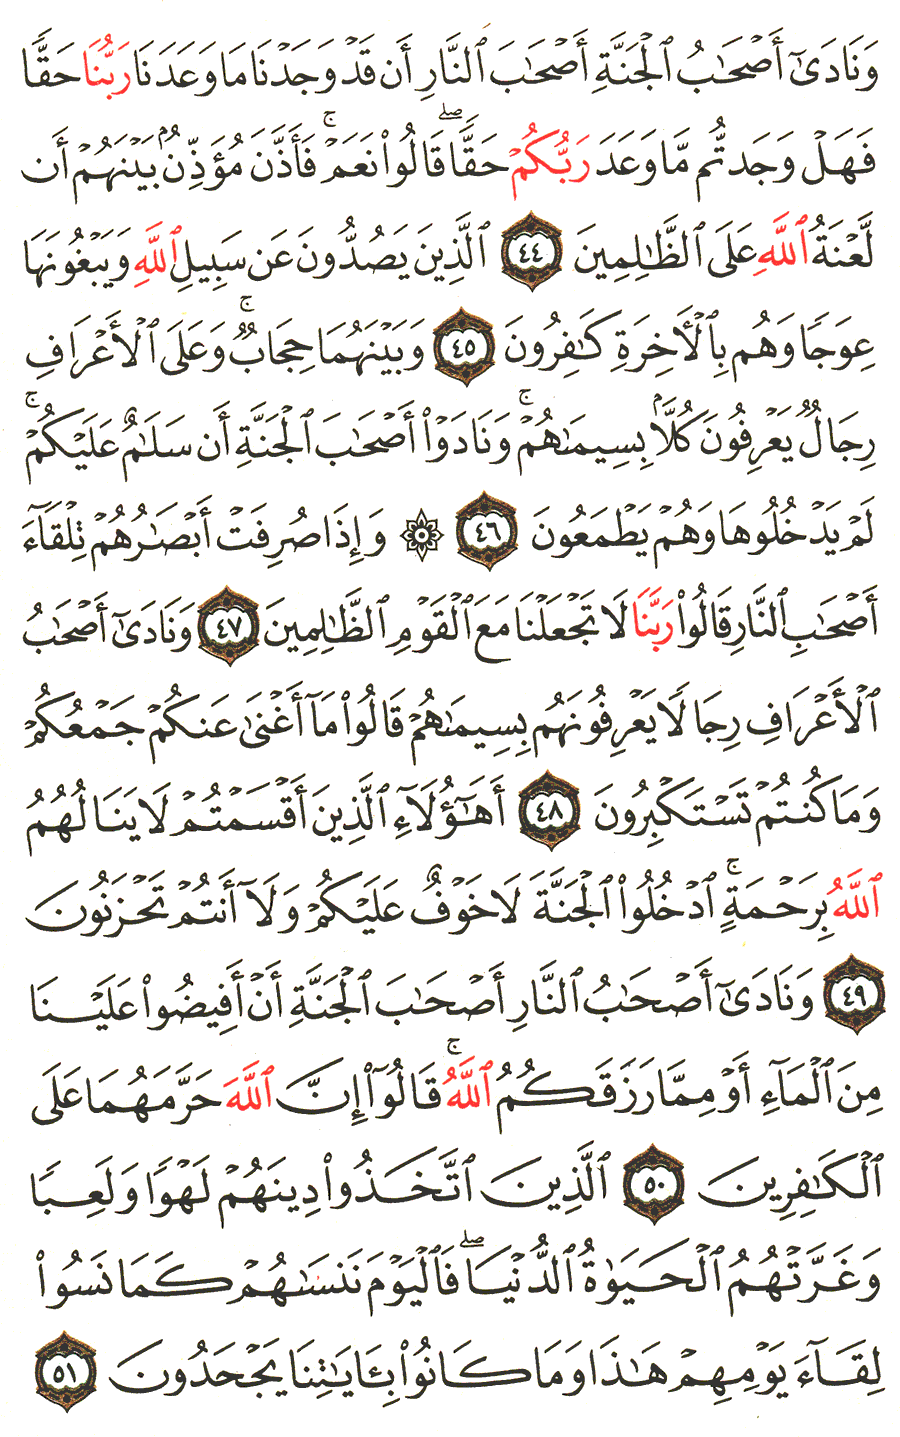 الصفحة رقم 156 من القرآن الكريم مكتوبة من المصحف